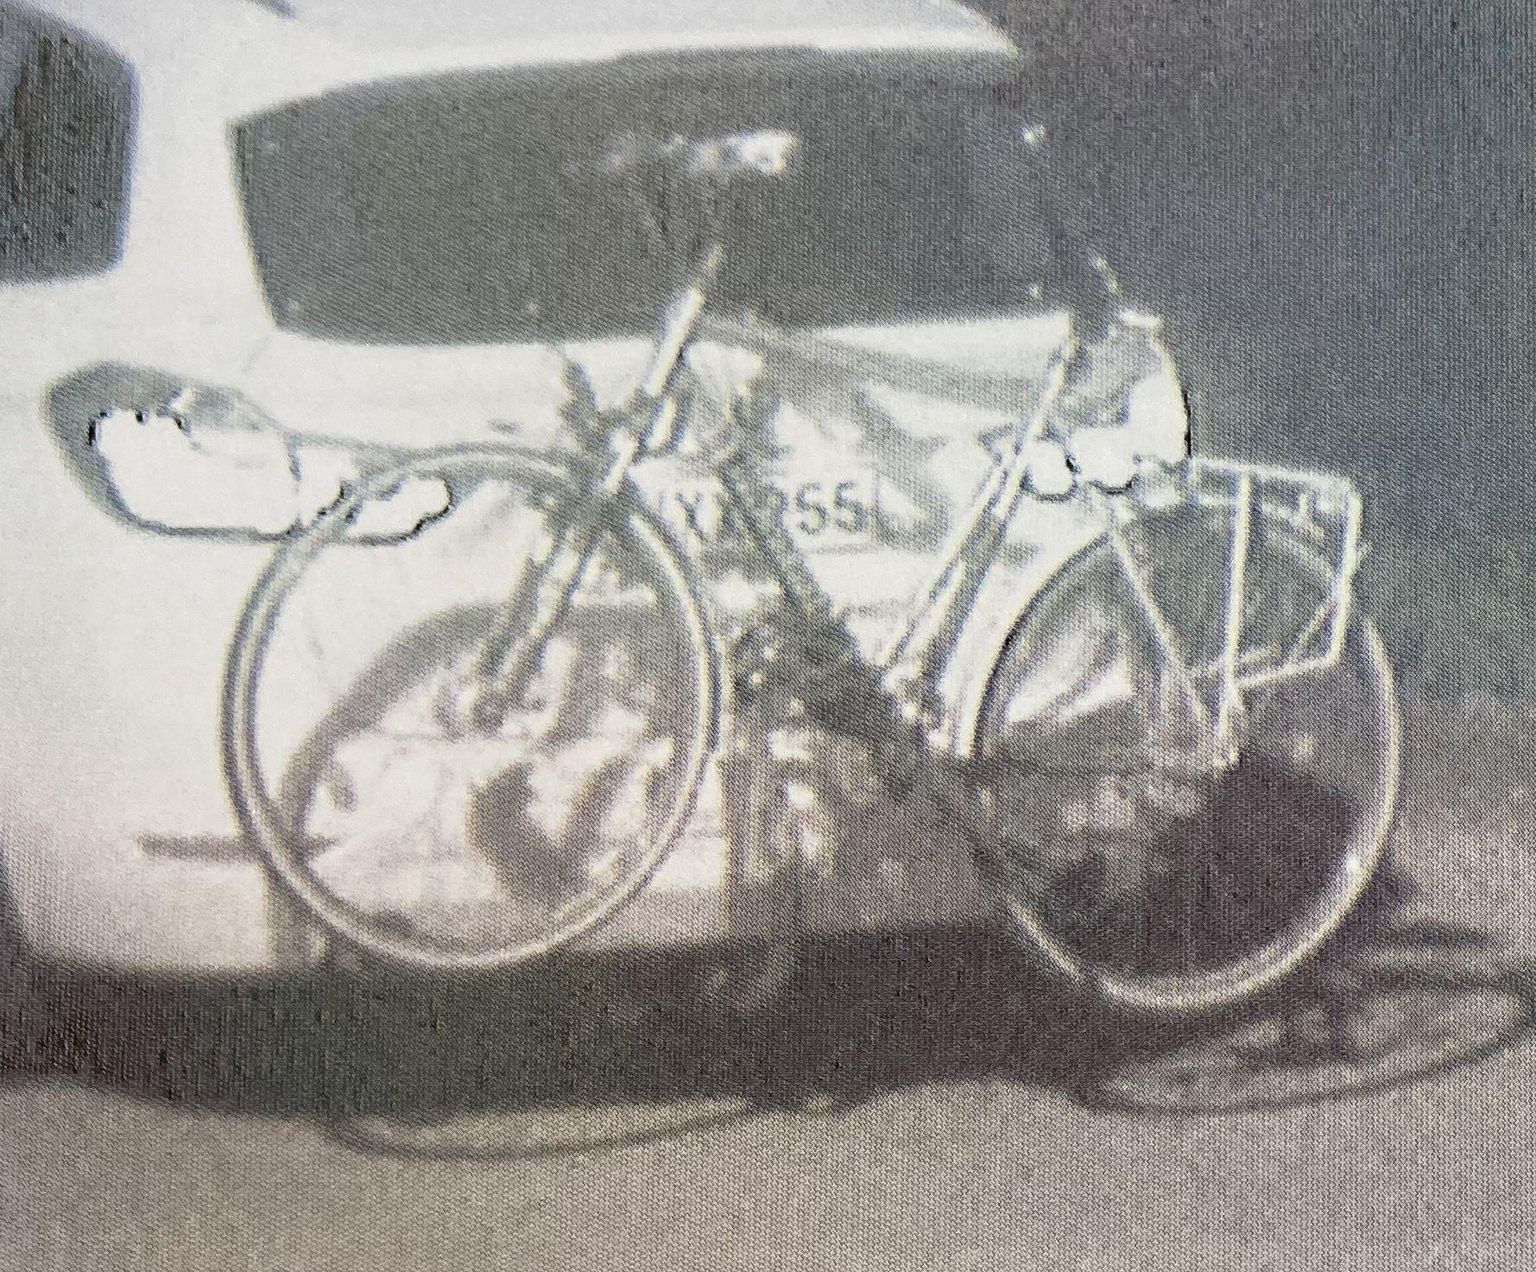 Inimese smugeldaja oli oma BMW pagasiluugi ette paigaldanud jalgratta, mis andis talle võimaluse kontrollimise korral väita, et pagasiluuki ei saa avada.